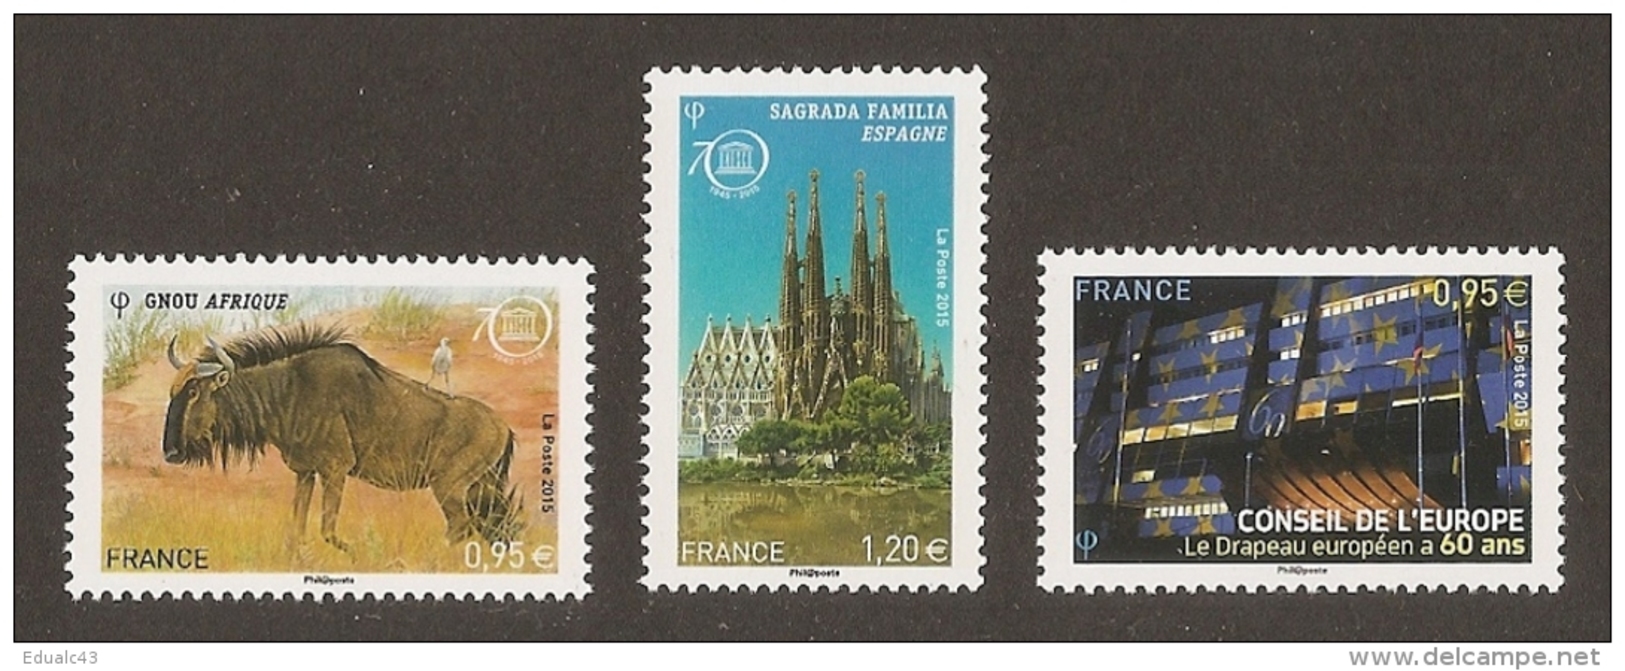 2015 -  Conseil Europe Et UNESCO N° 163 164 165 - Drapeau, Gnou D'Afrrique Et SAGRADA FAMILIA Barcelone -NEUF ** LUXE - Neufs